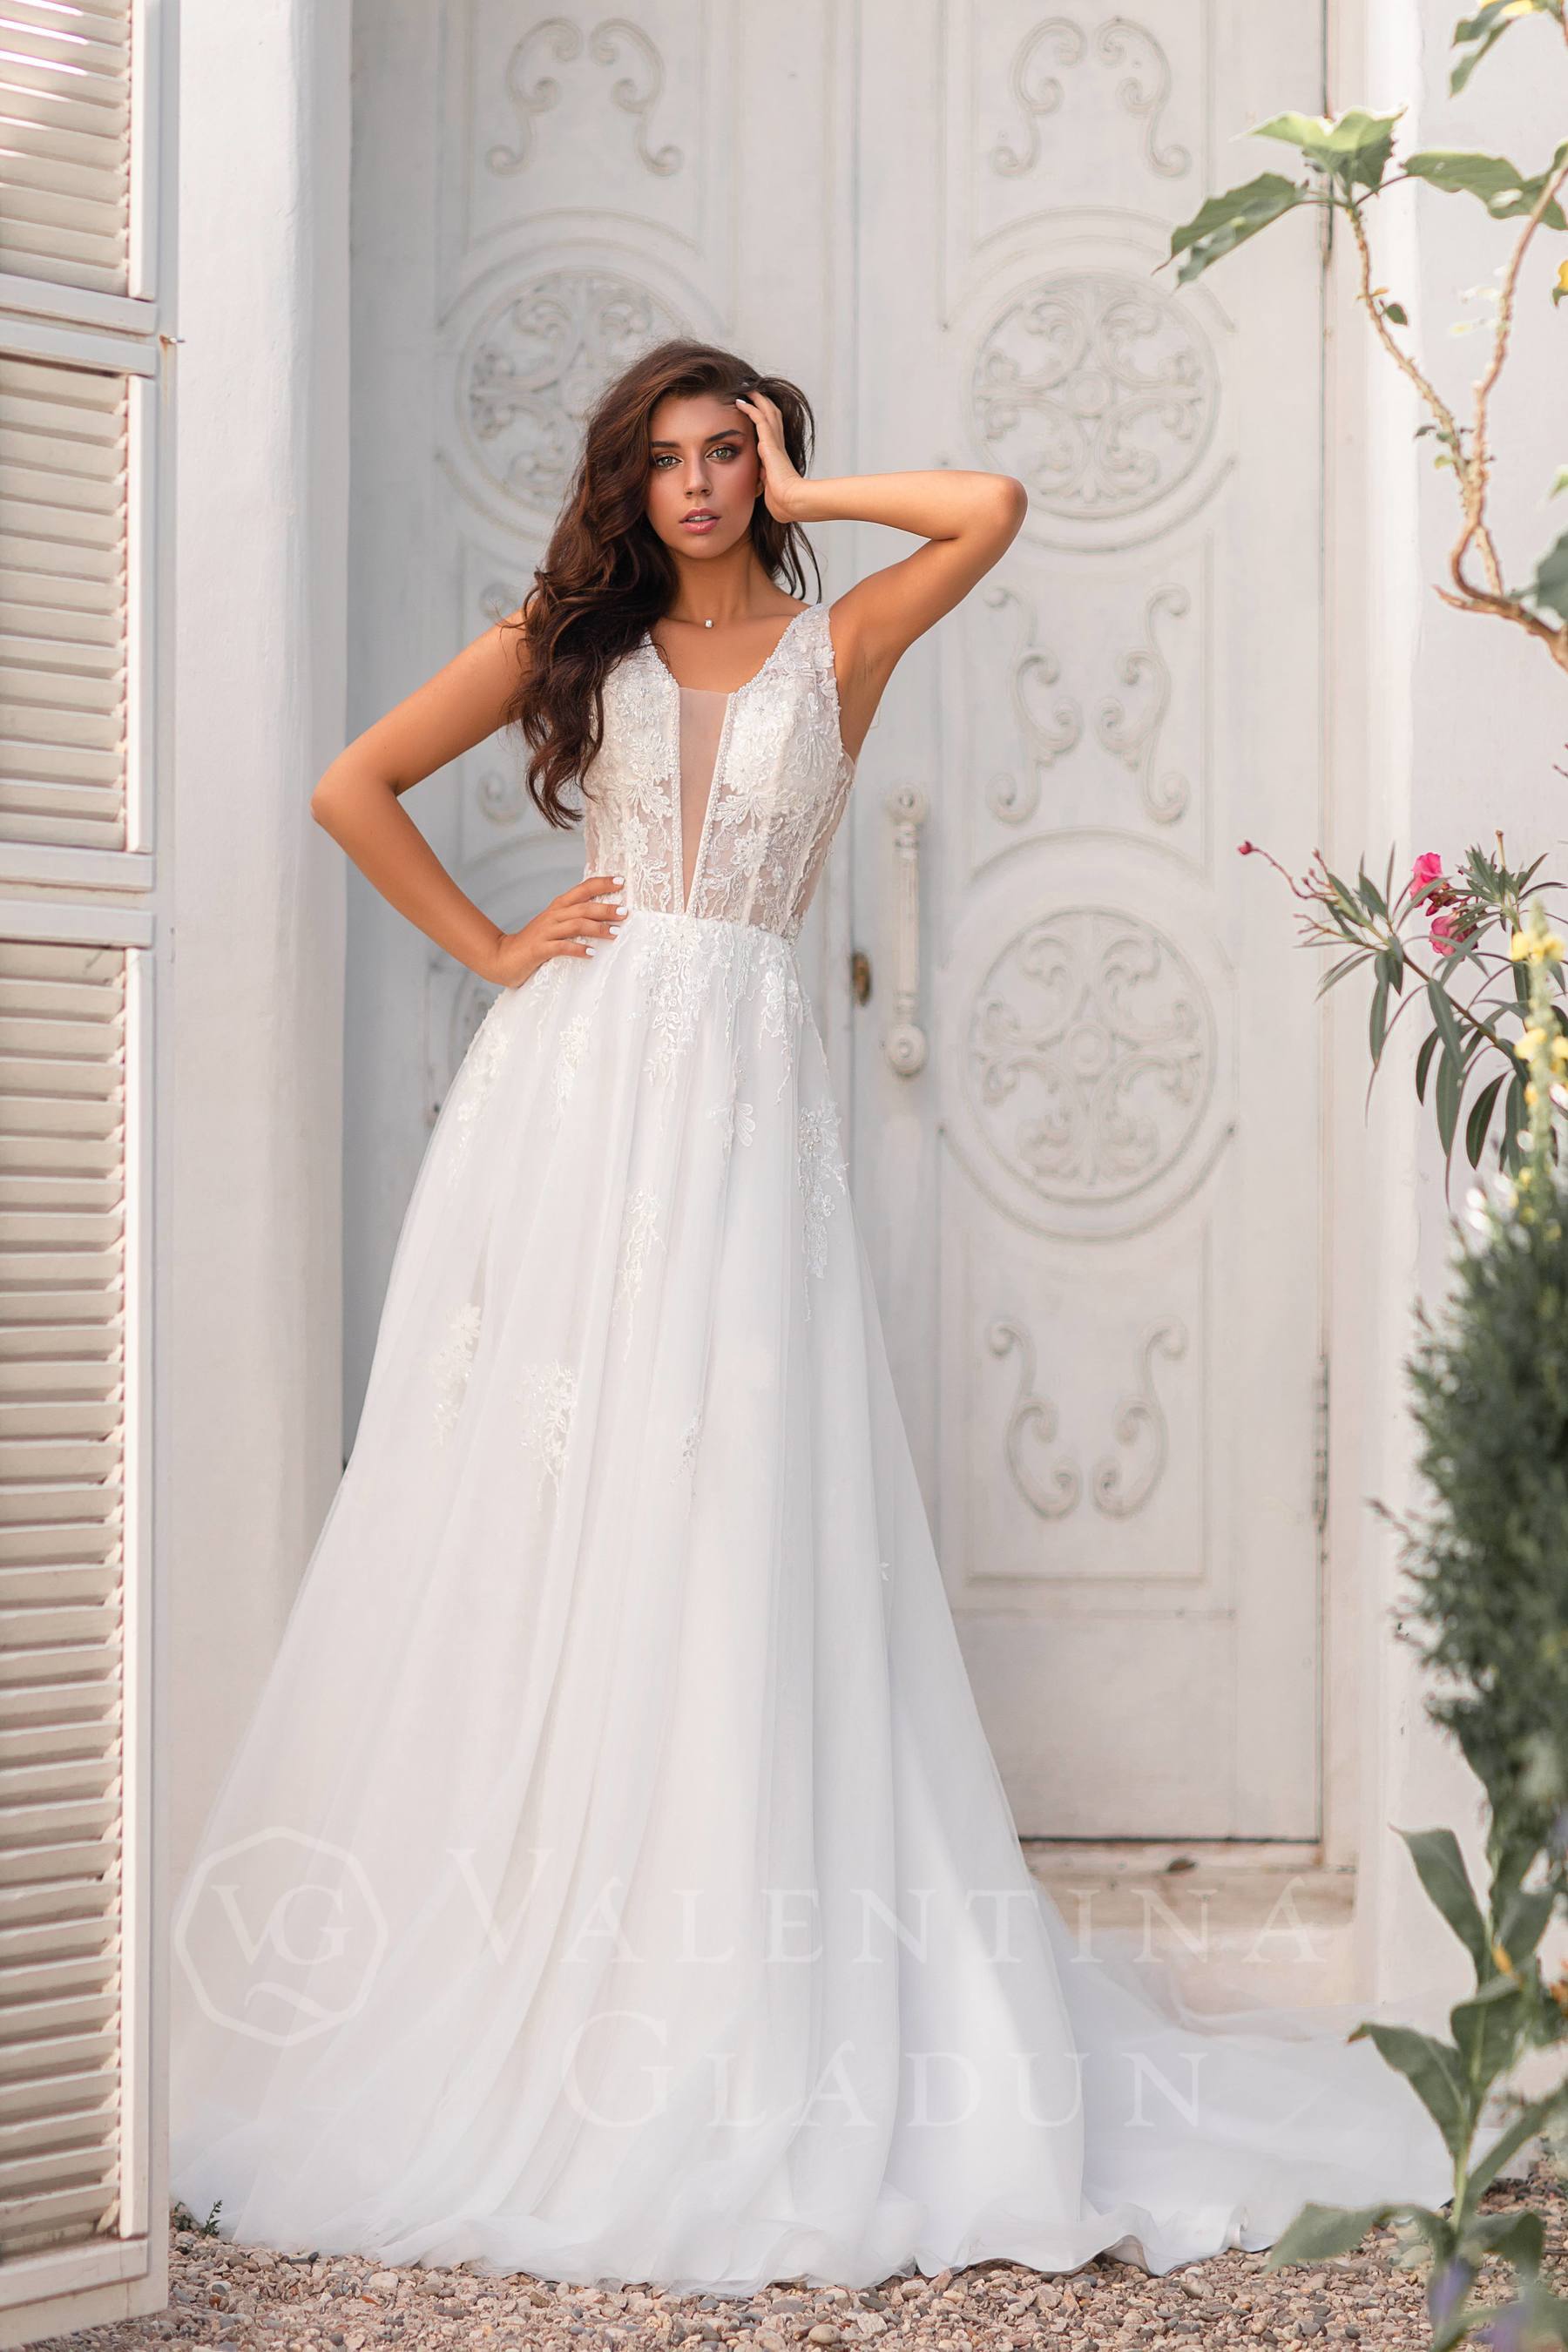 пышное свадебное платье Bellissima коллекции 2020